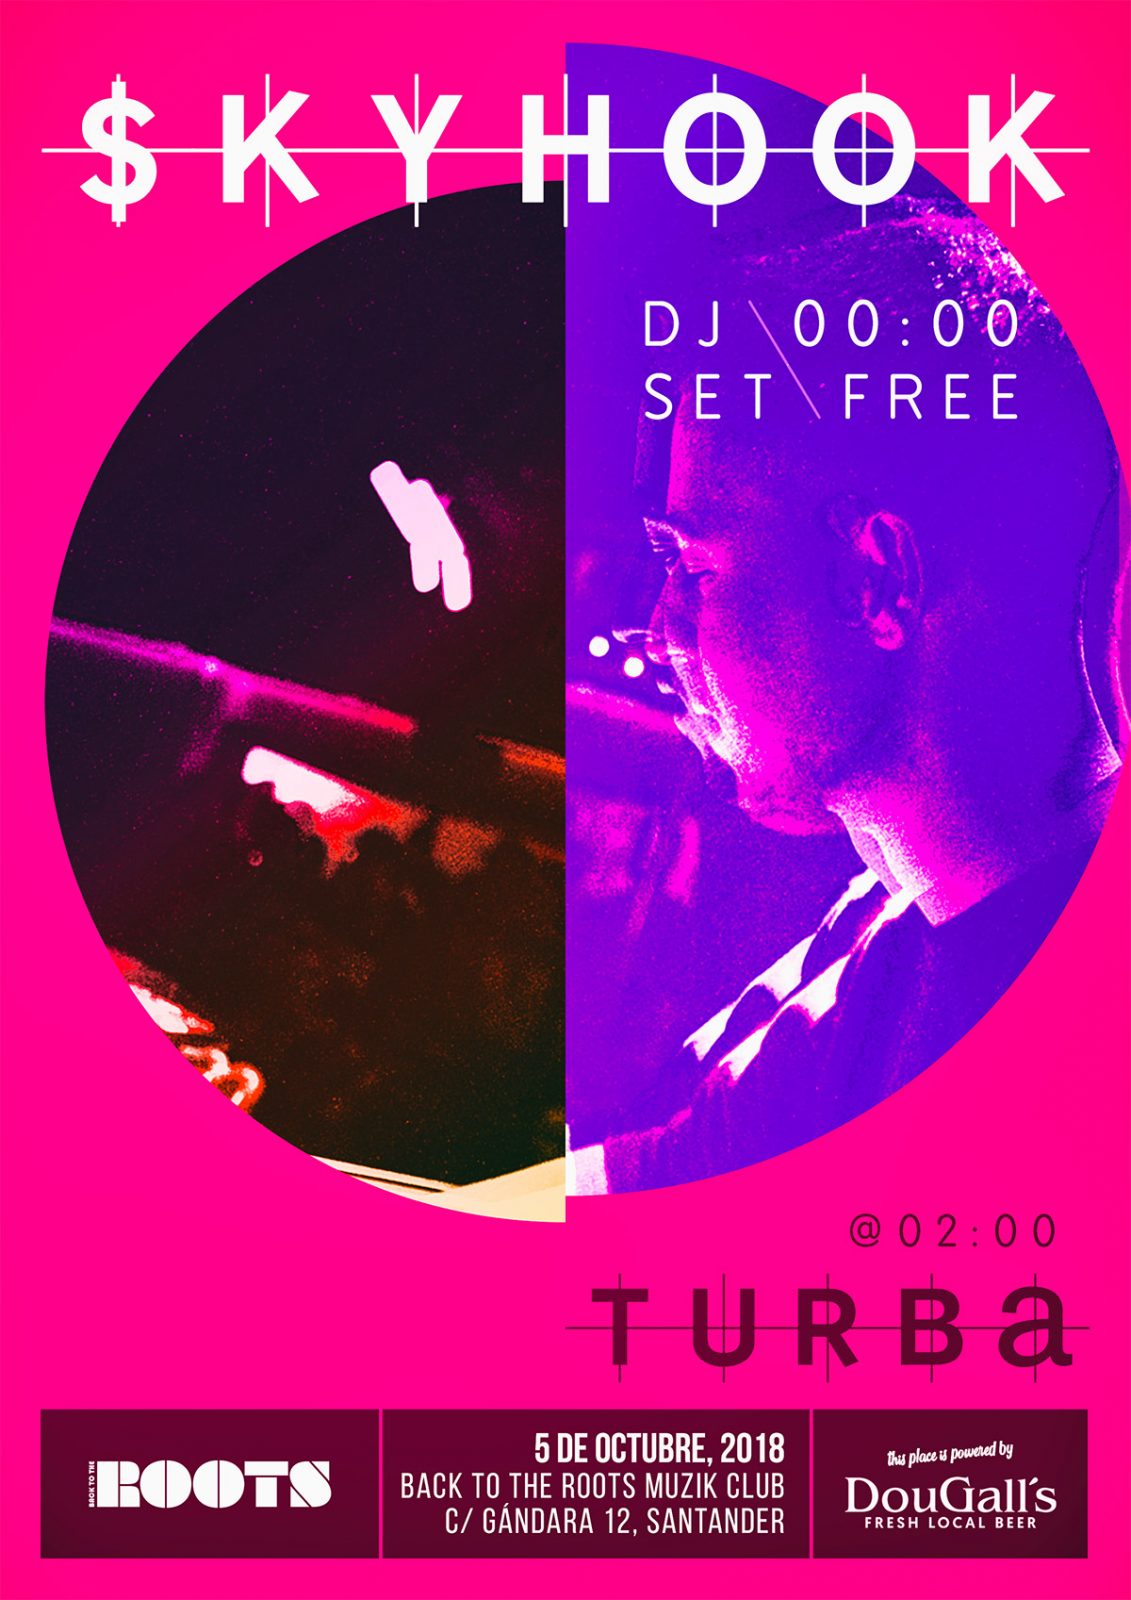 $kyhook (DJ set) + Turba